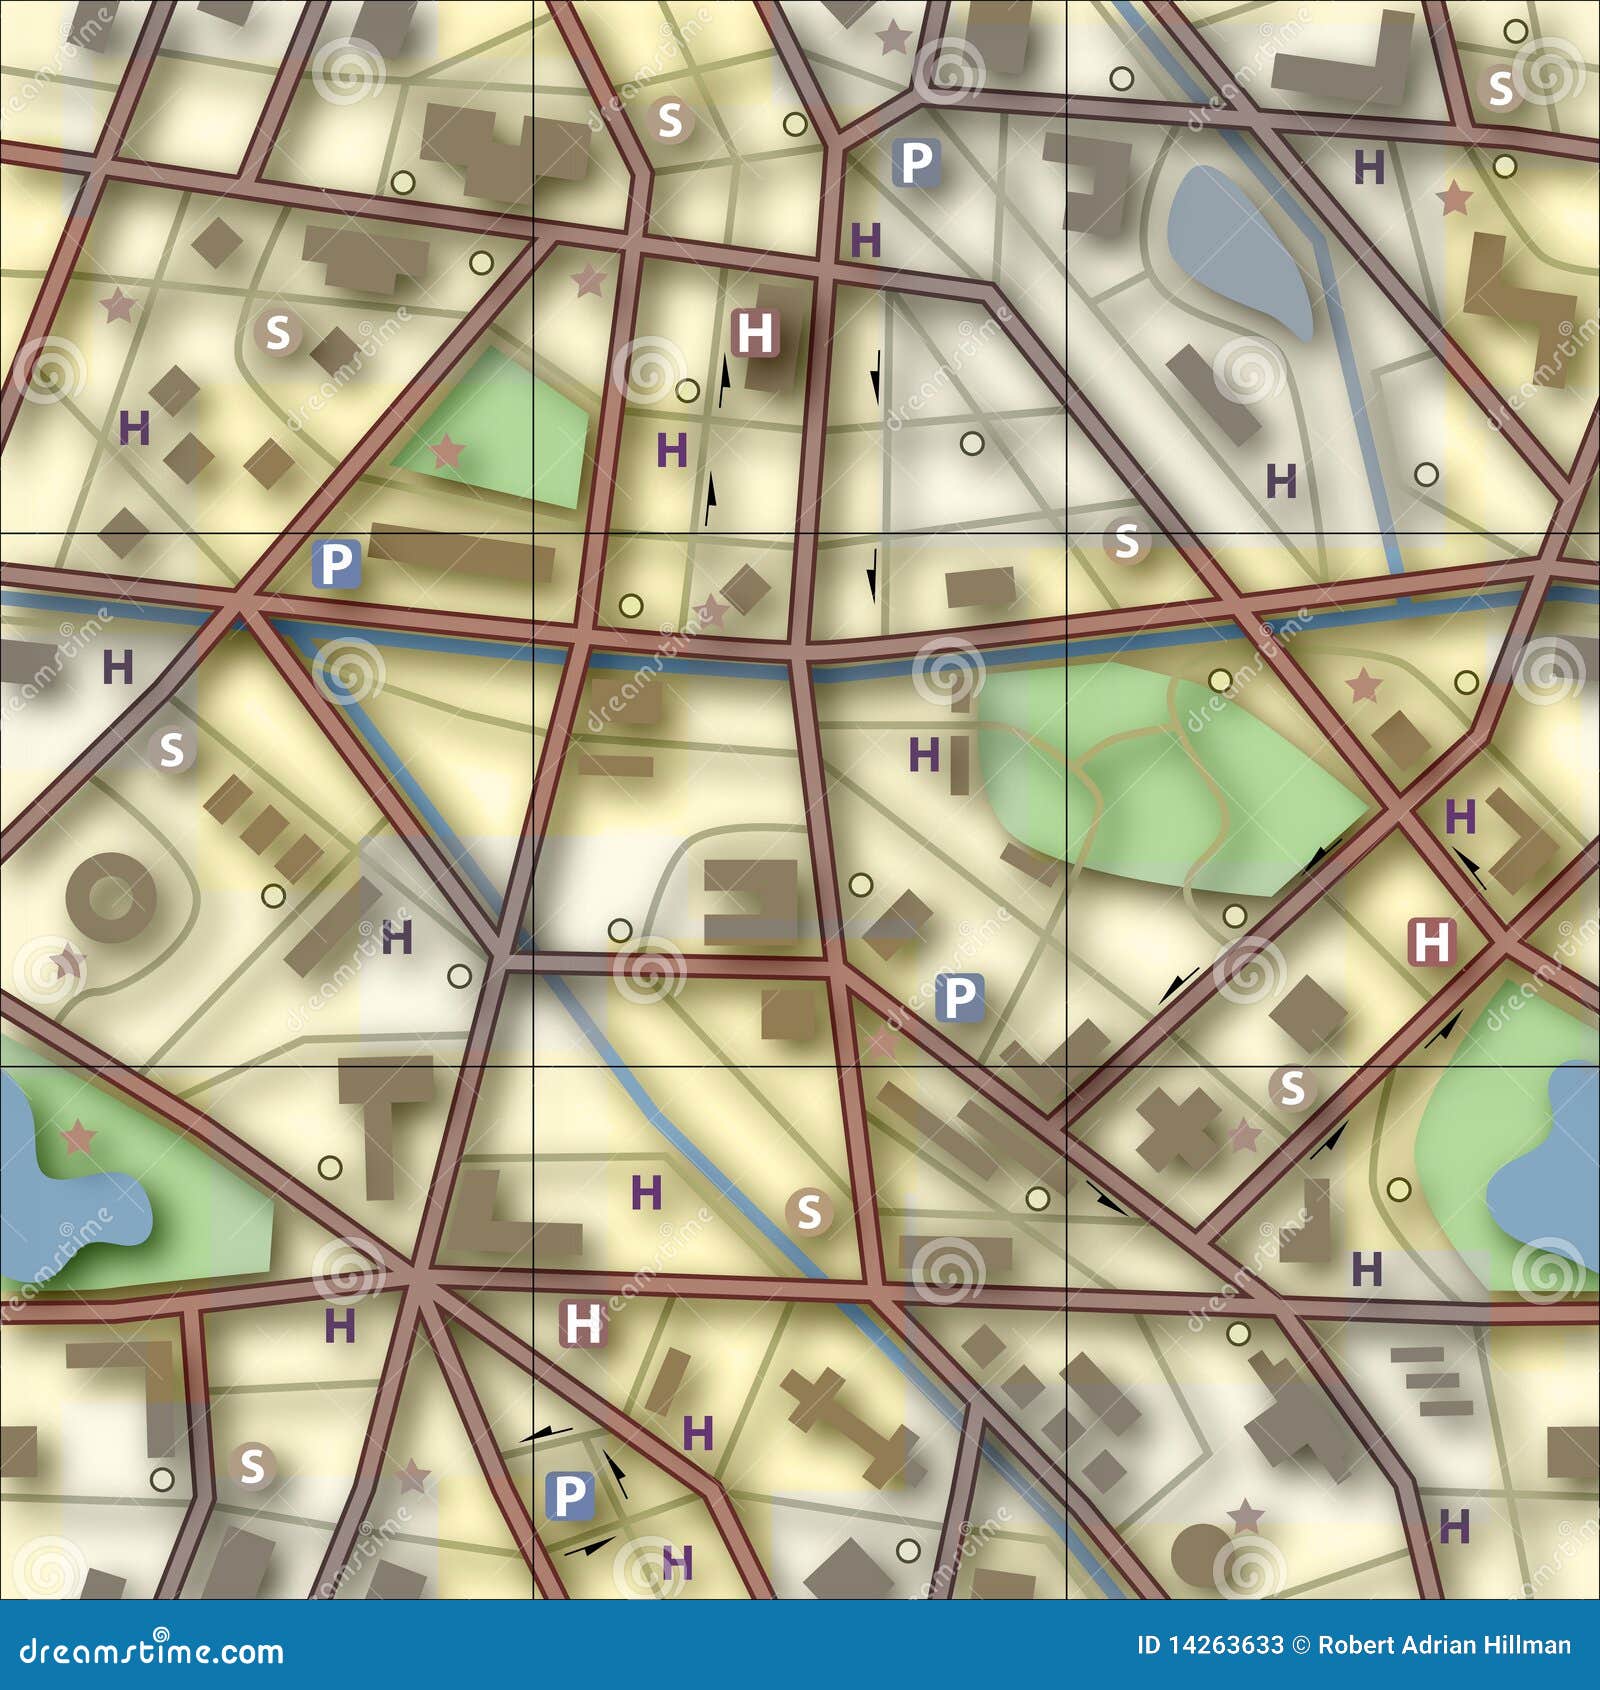 Большой квадрат в карте. Карта с квадратами. Карта квадратного города. Подоснова на карту квадраты. OSM карта в квадратах.